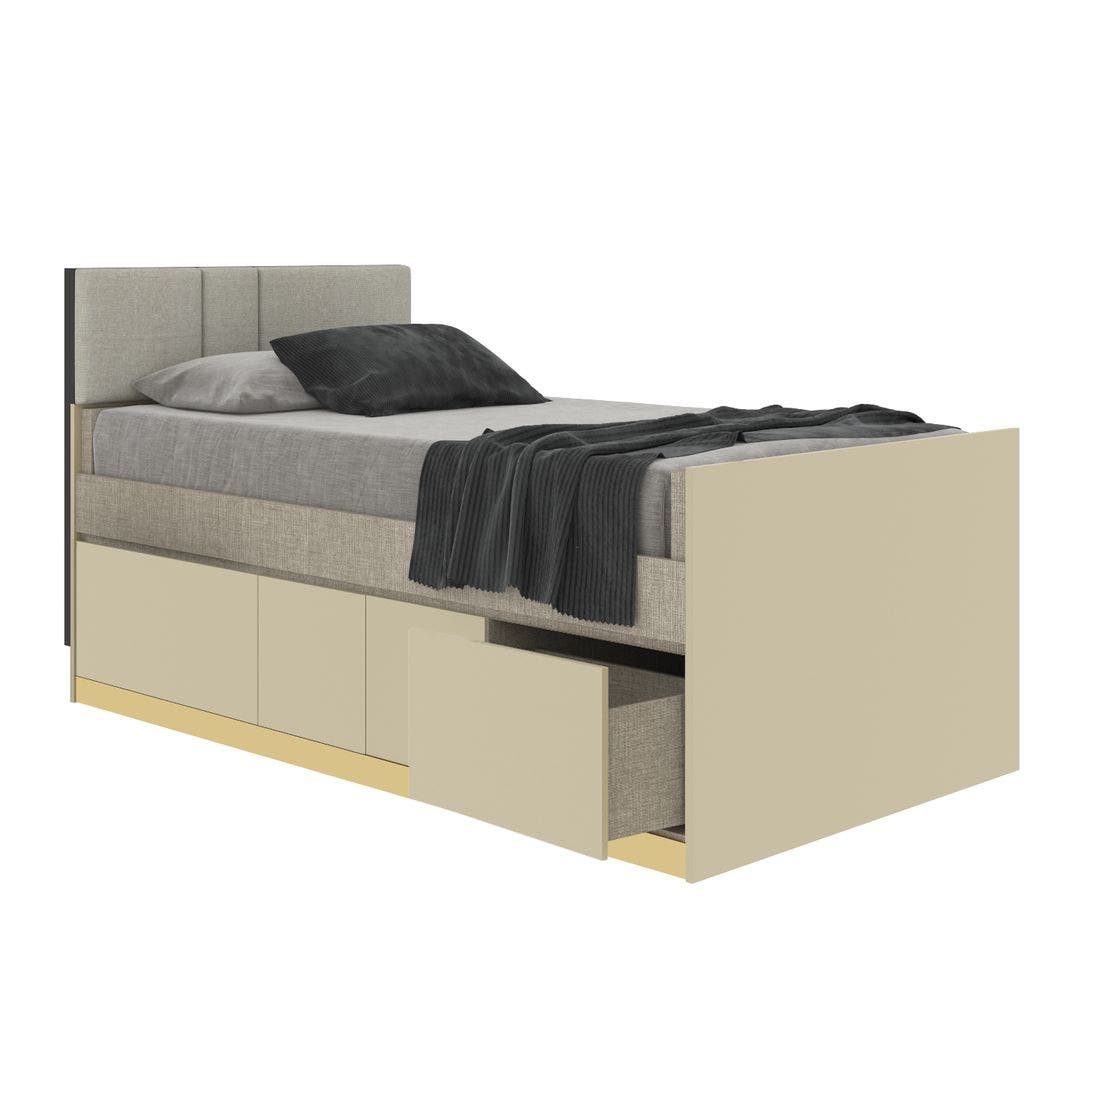 19203896-blisz-furniture-bedroom-furniture-beds-06